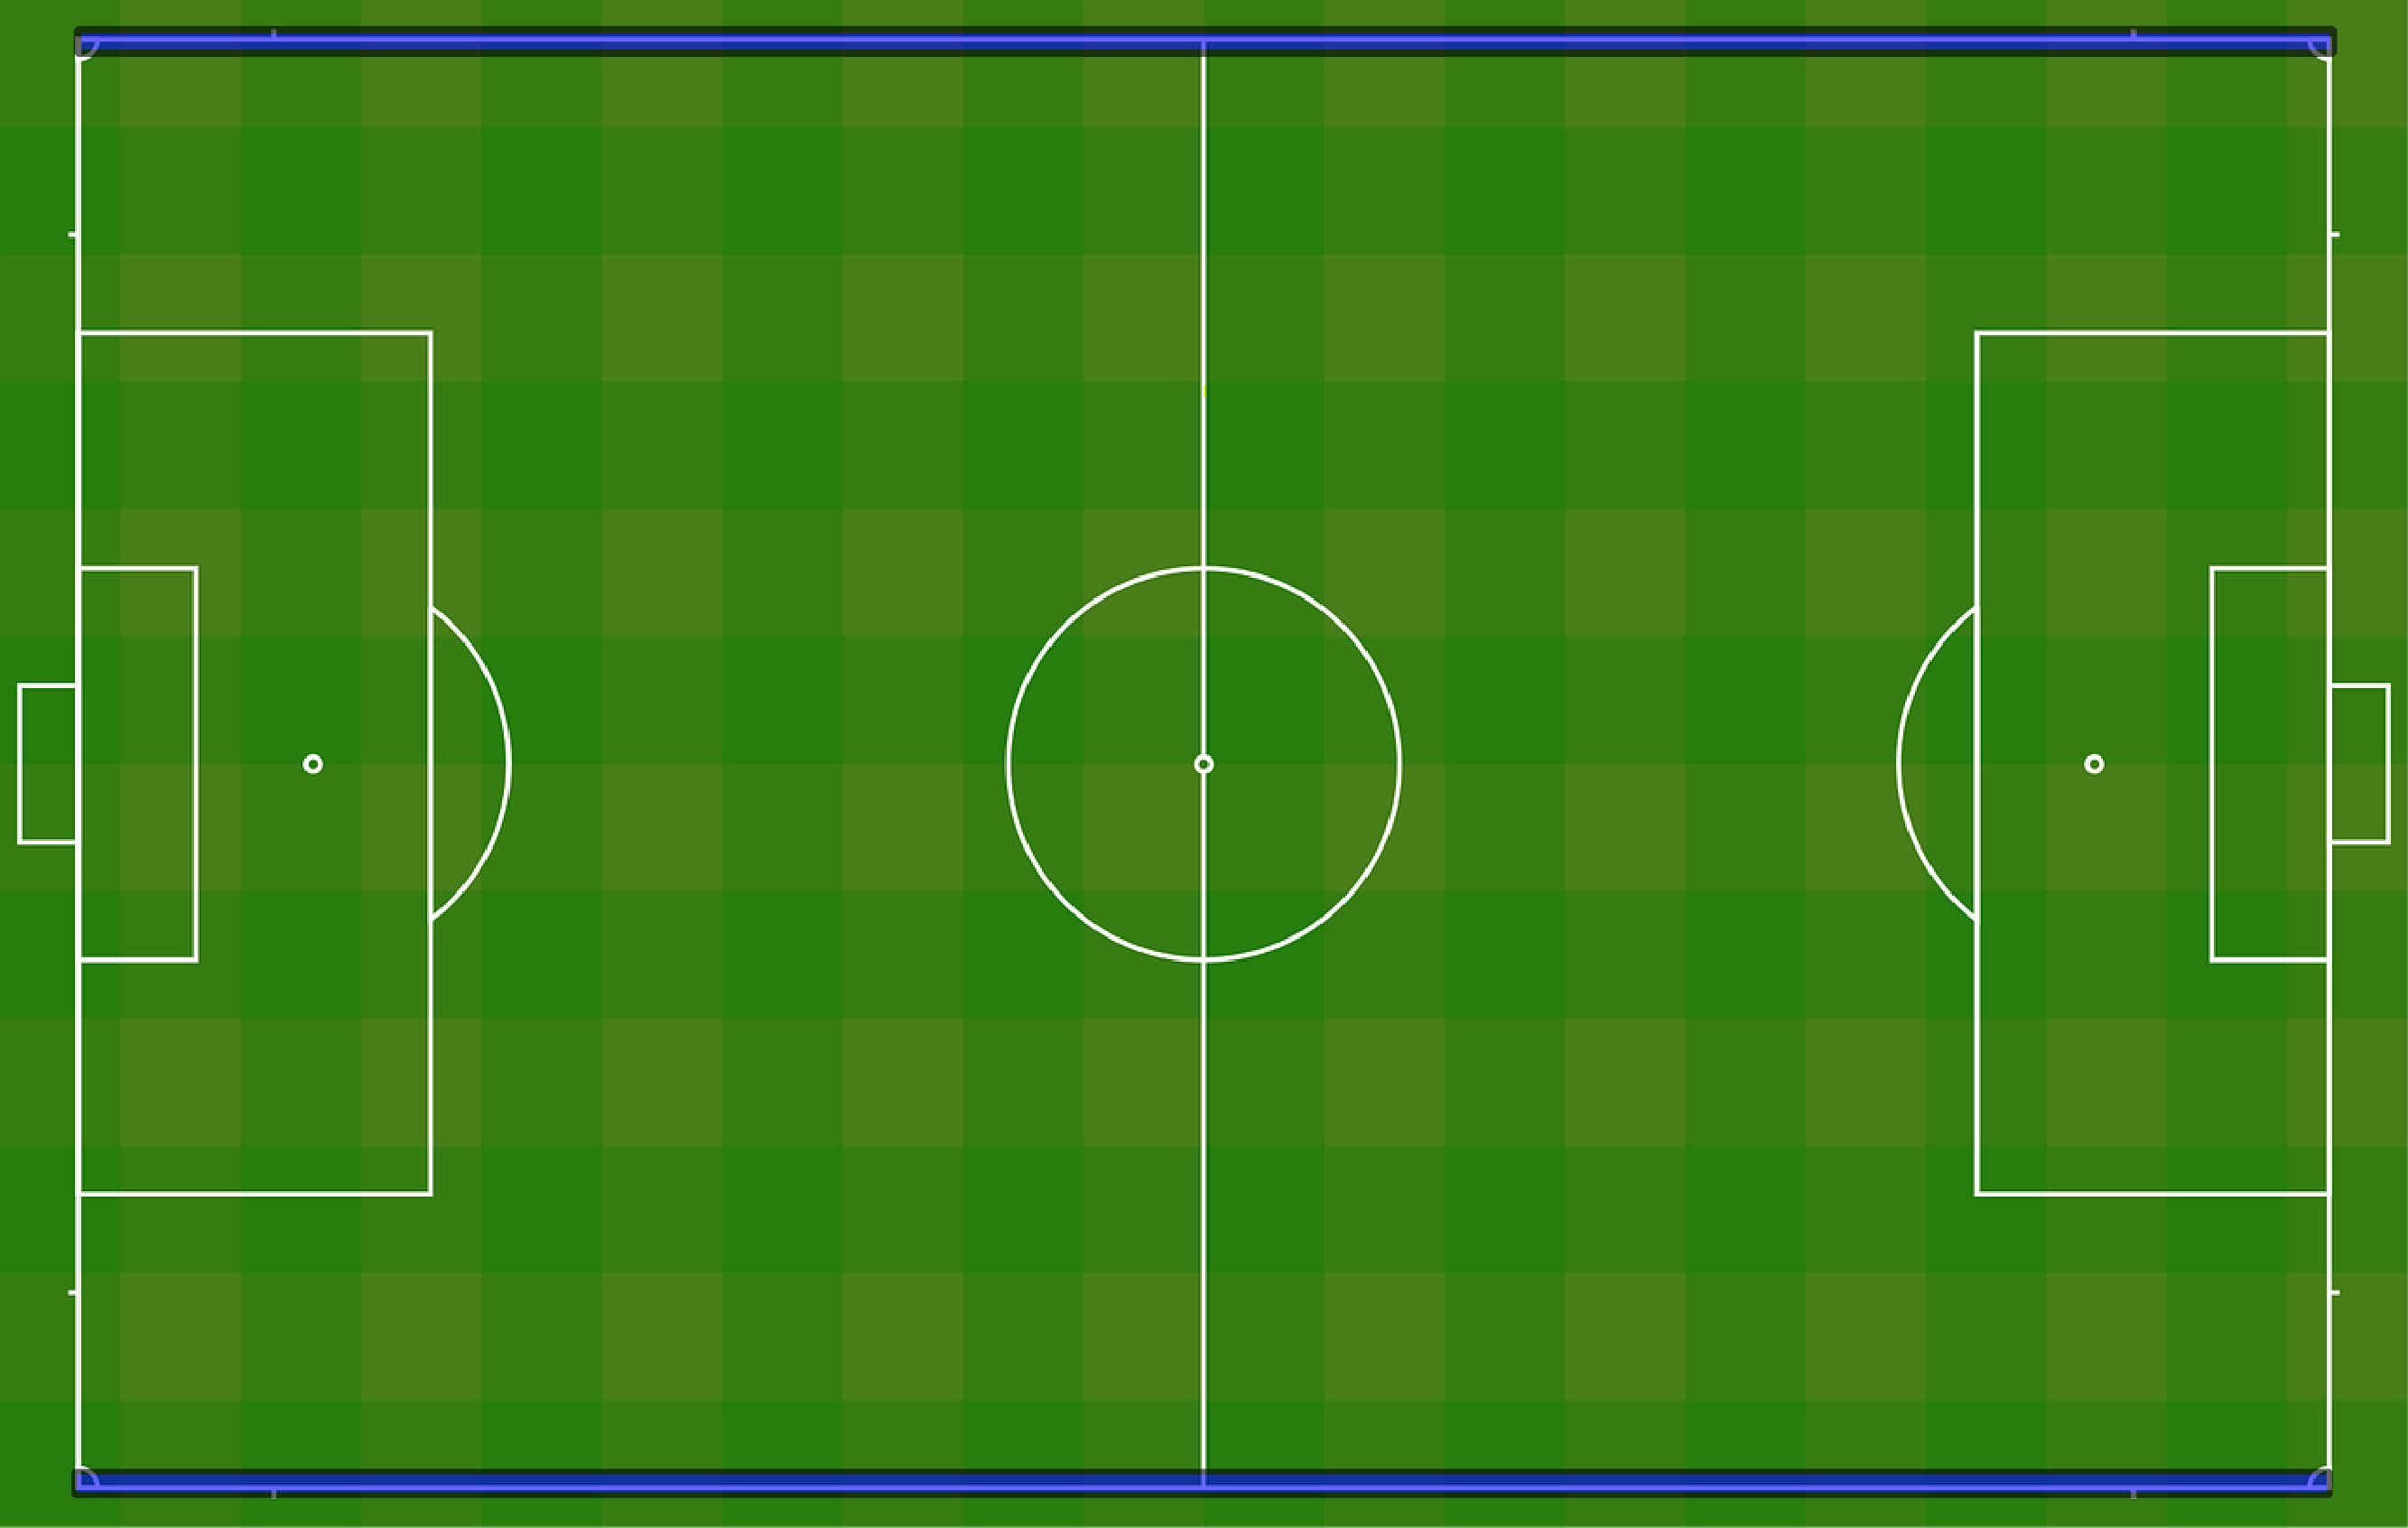 図解 タッチライン とは どういう意味 わかりやすいサッカー用語解説 Telesoccer